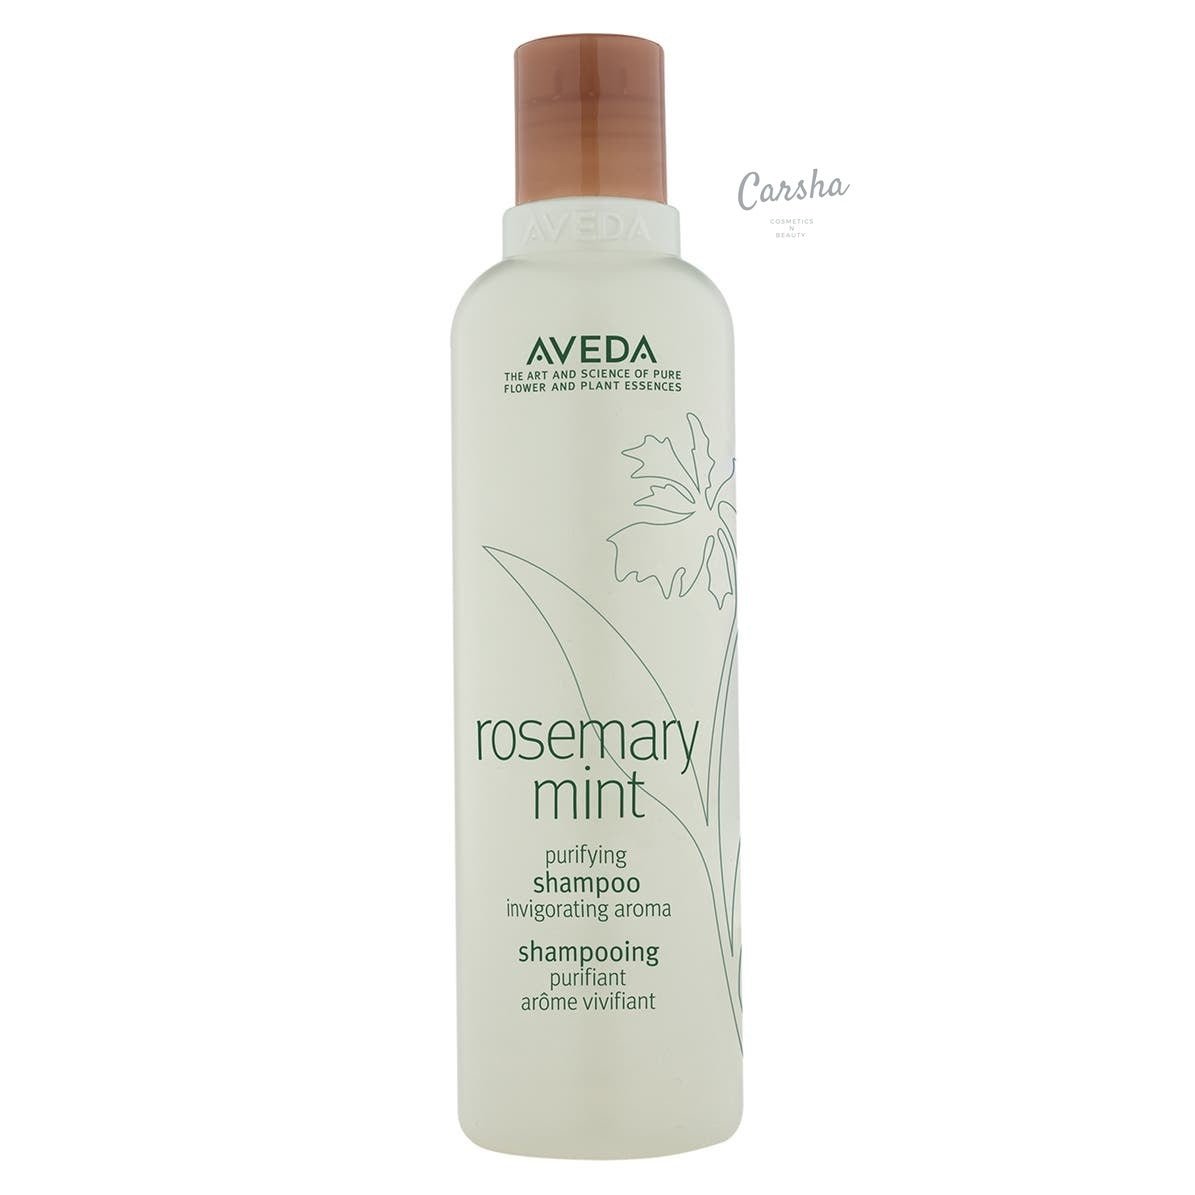 Aveda Rosemary Mint Purifying Shampoo | Carsha